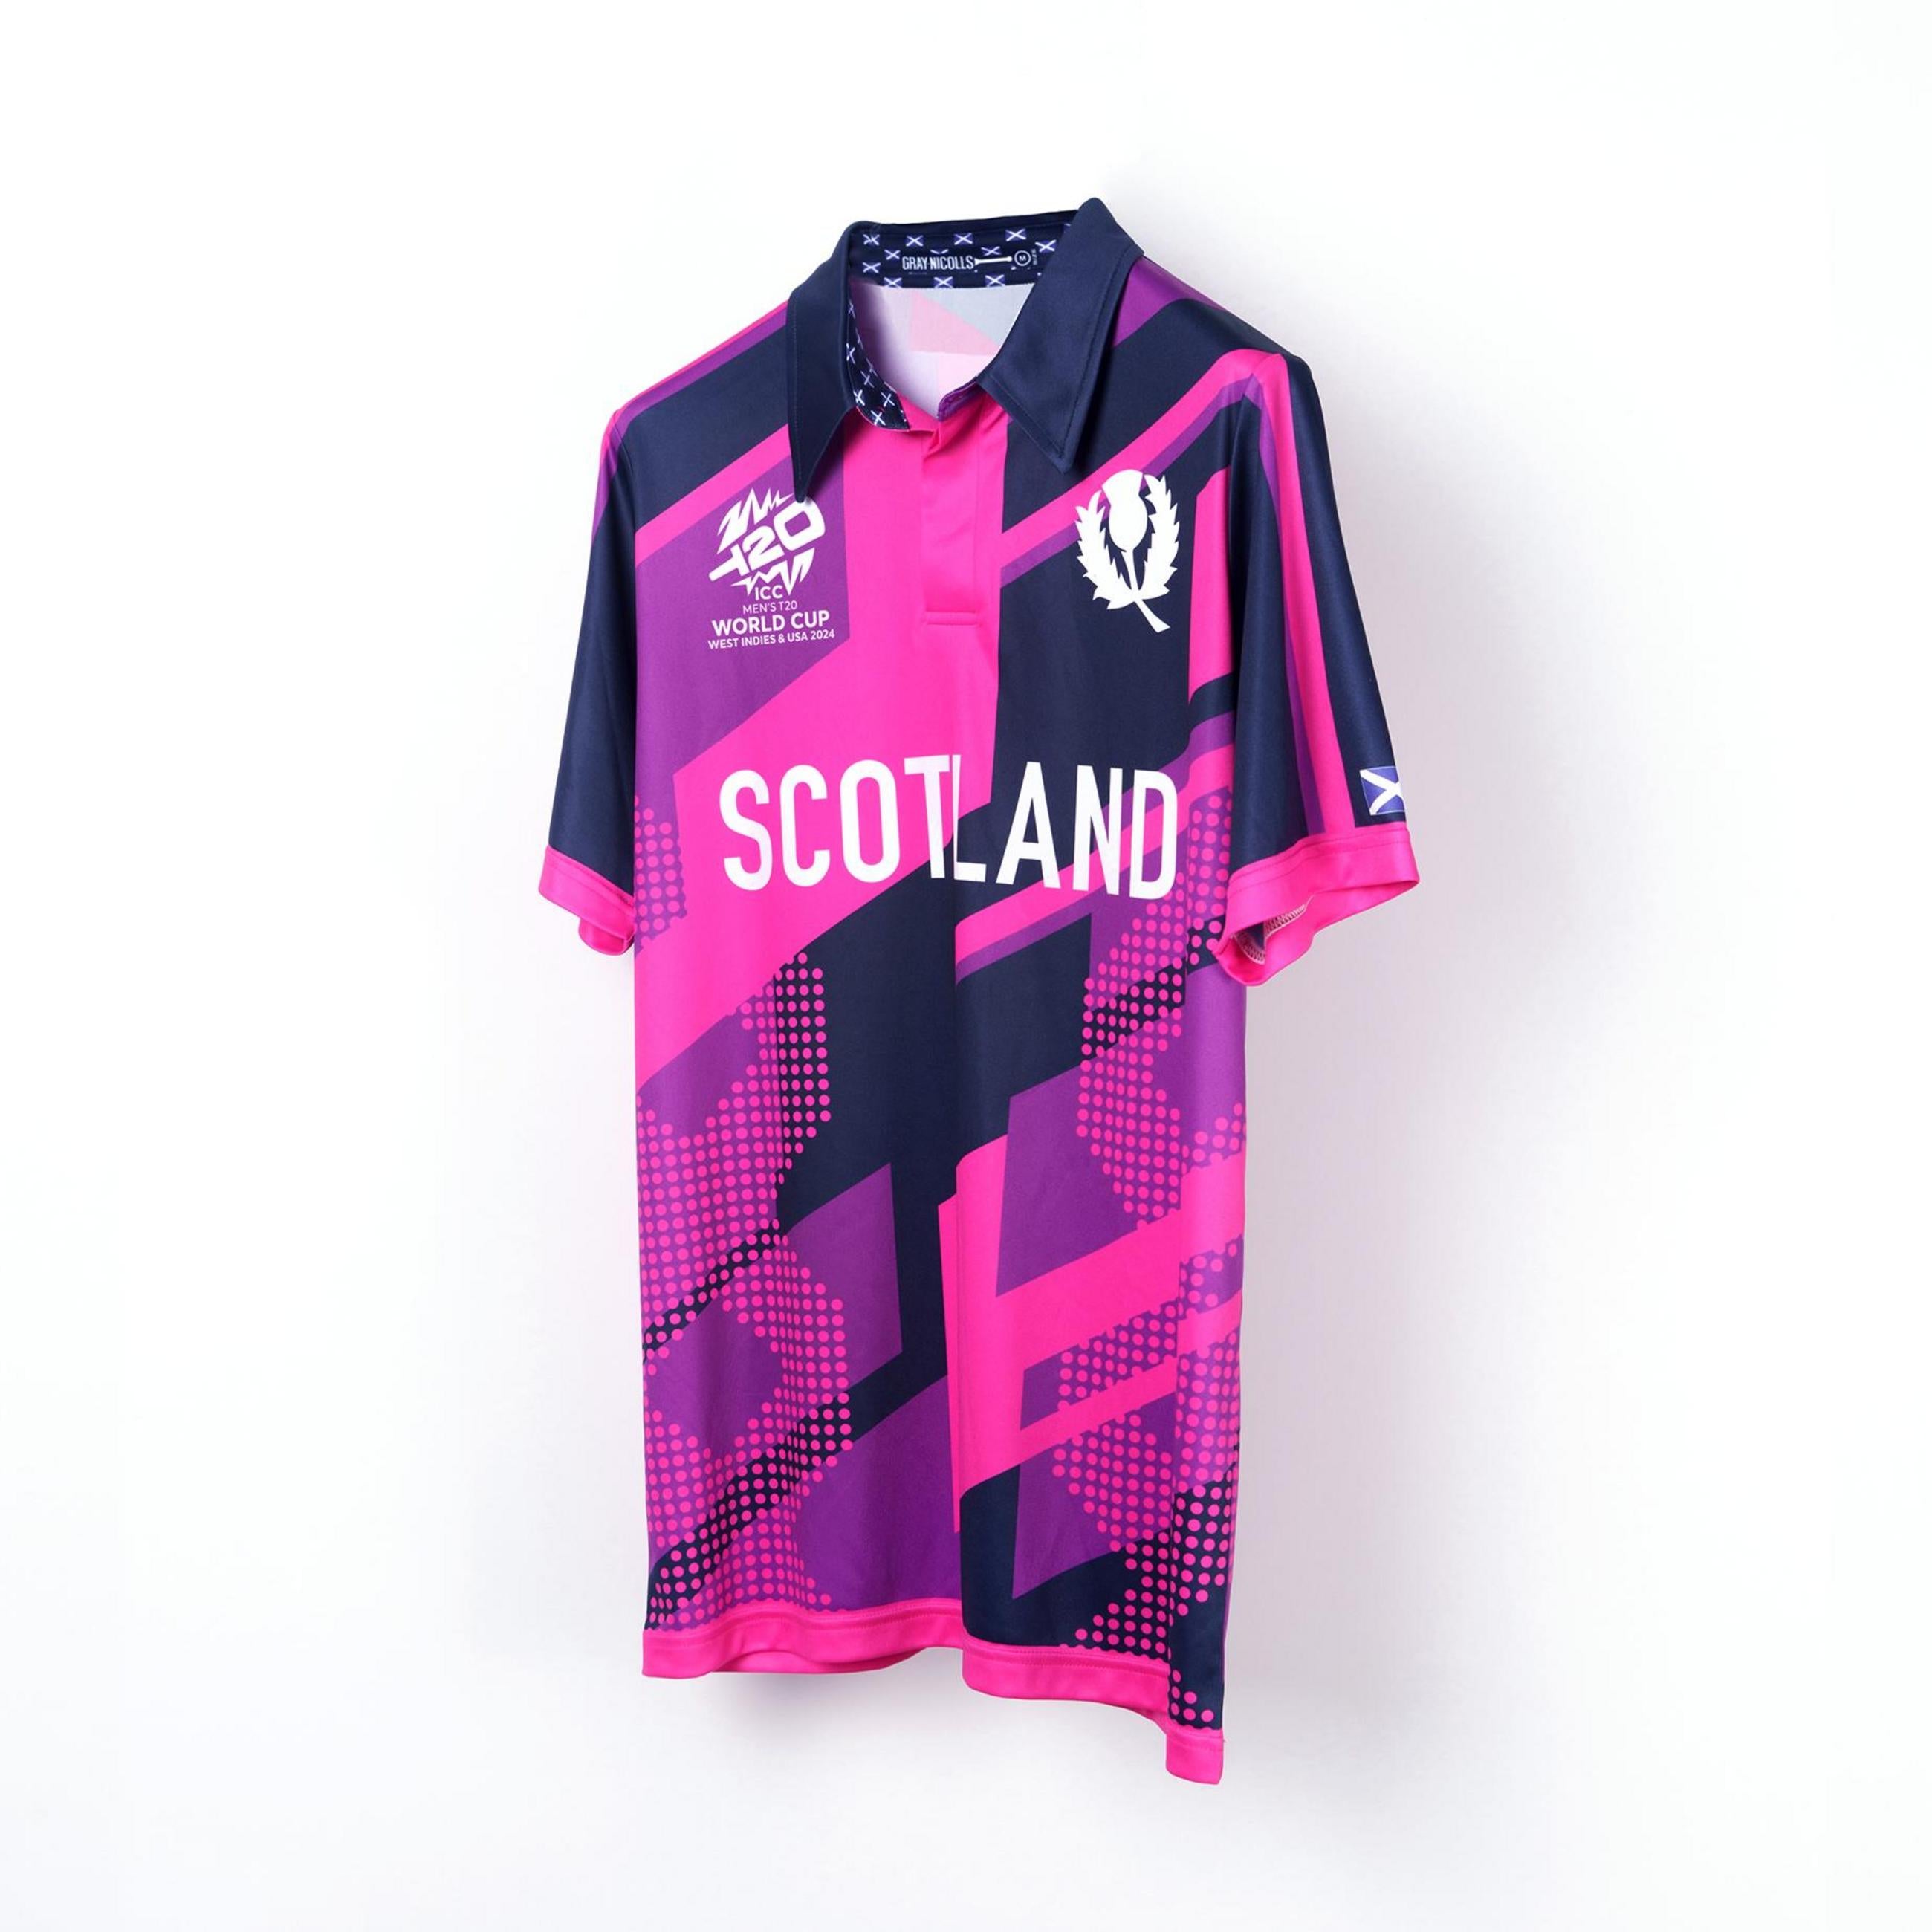 Cricket Scotland T20 World Cup 24 Shirt - Women's Short Sleeve